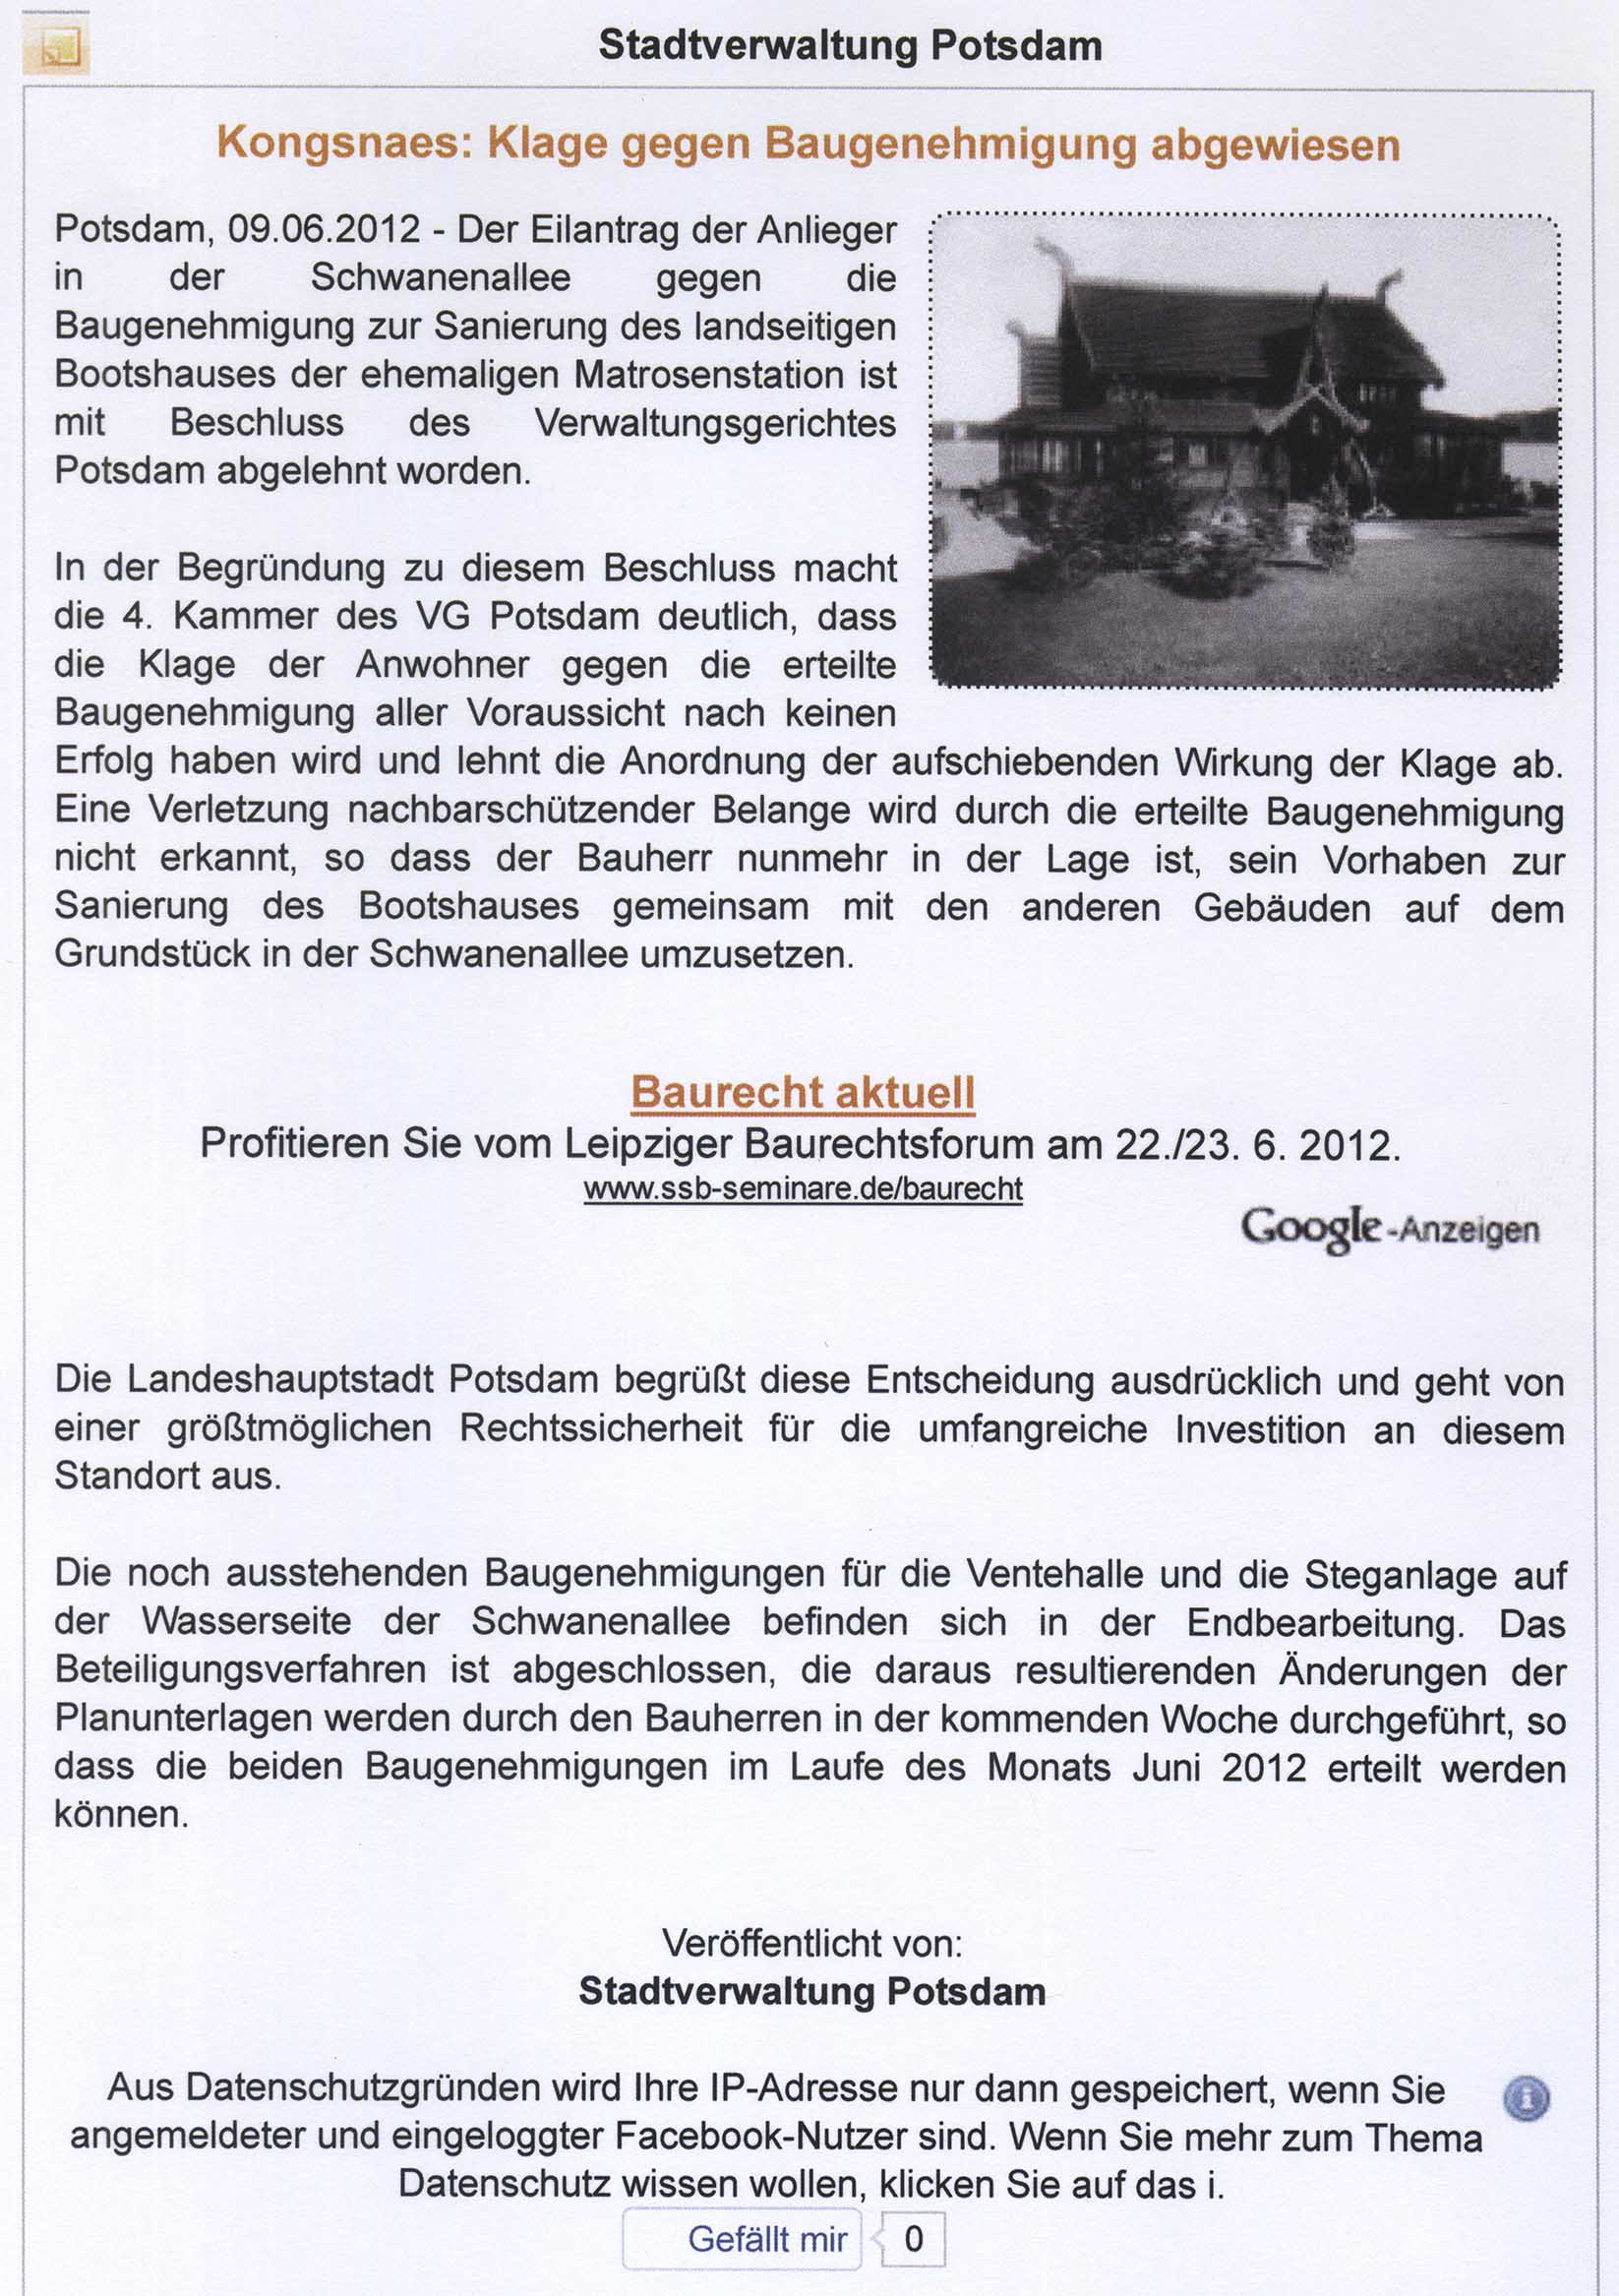 Stadtverwaltung Potsdam - 09.06.2012